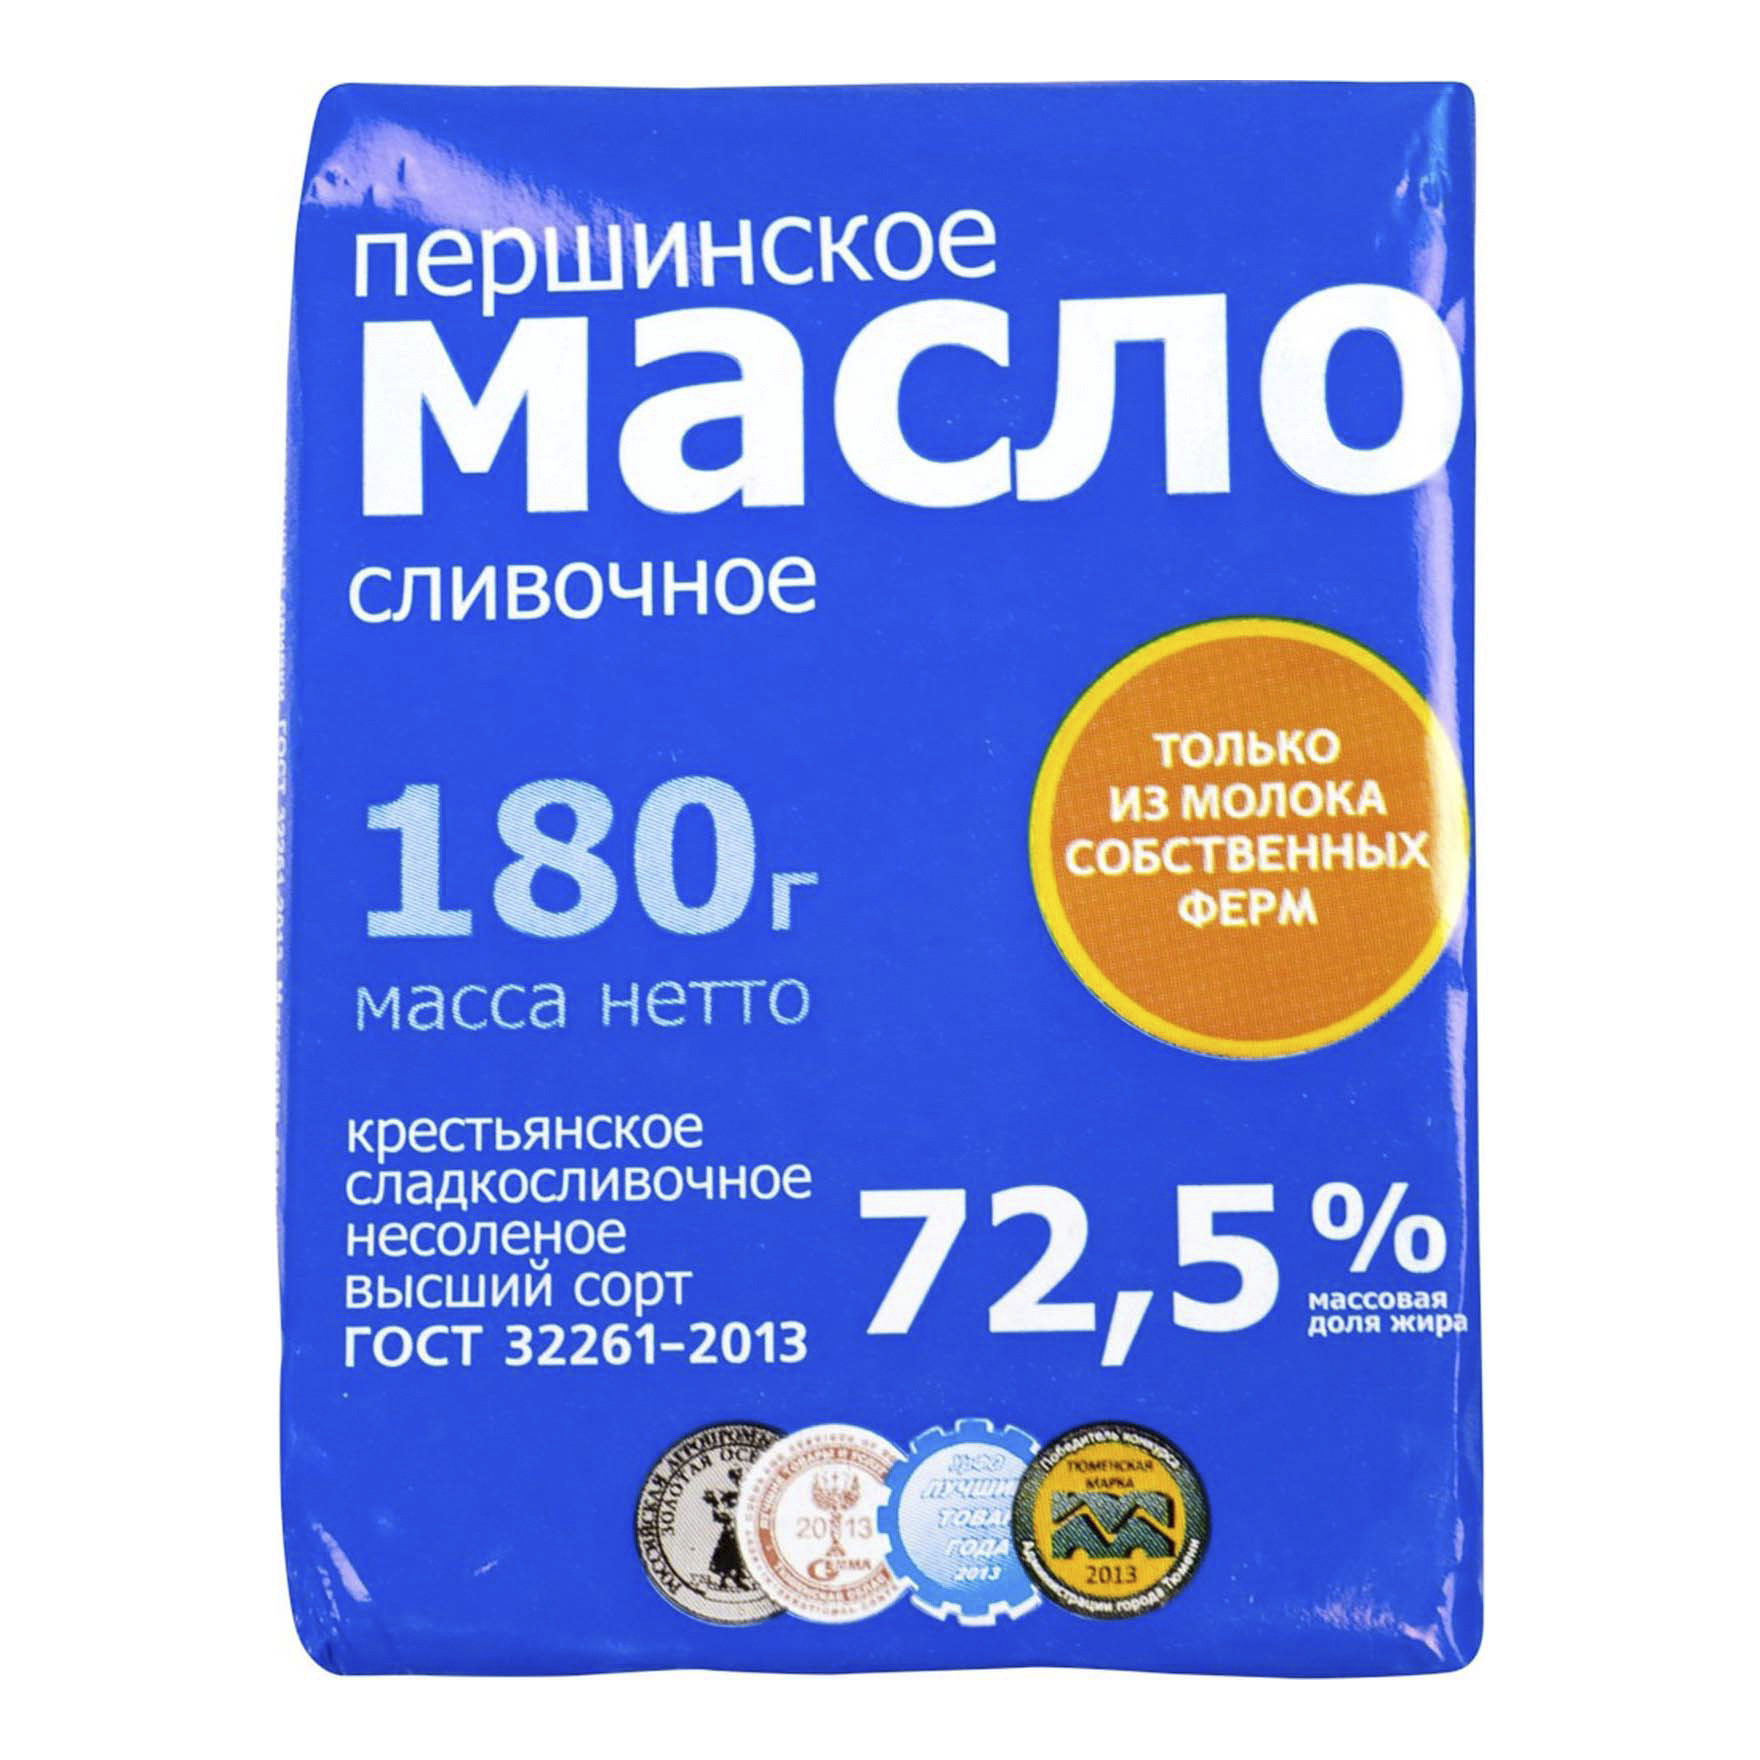 Сладкосливочное масло Першинское Крестьянское 72,5% БЗМЖ 180 г